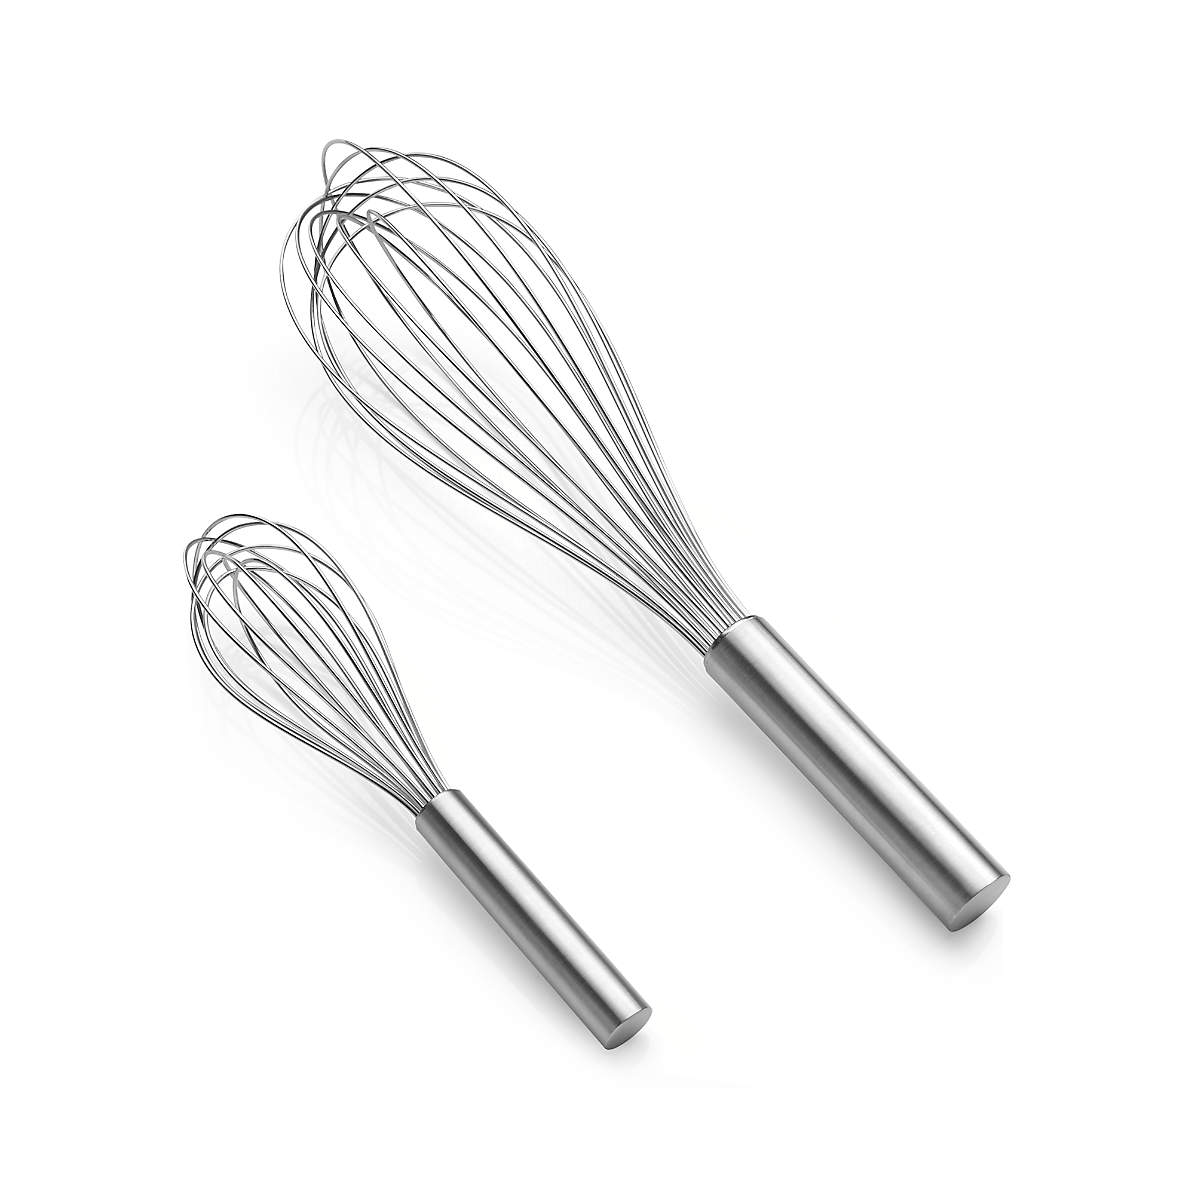 Best Balloon Whisk  Food safe epoxy, Whisks, Kitchen cooking utensils